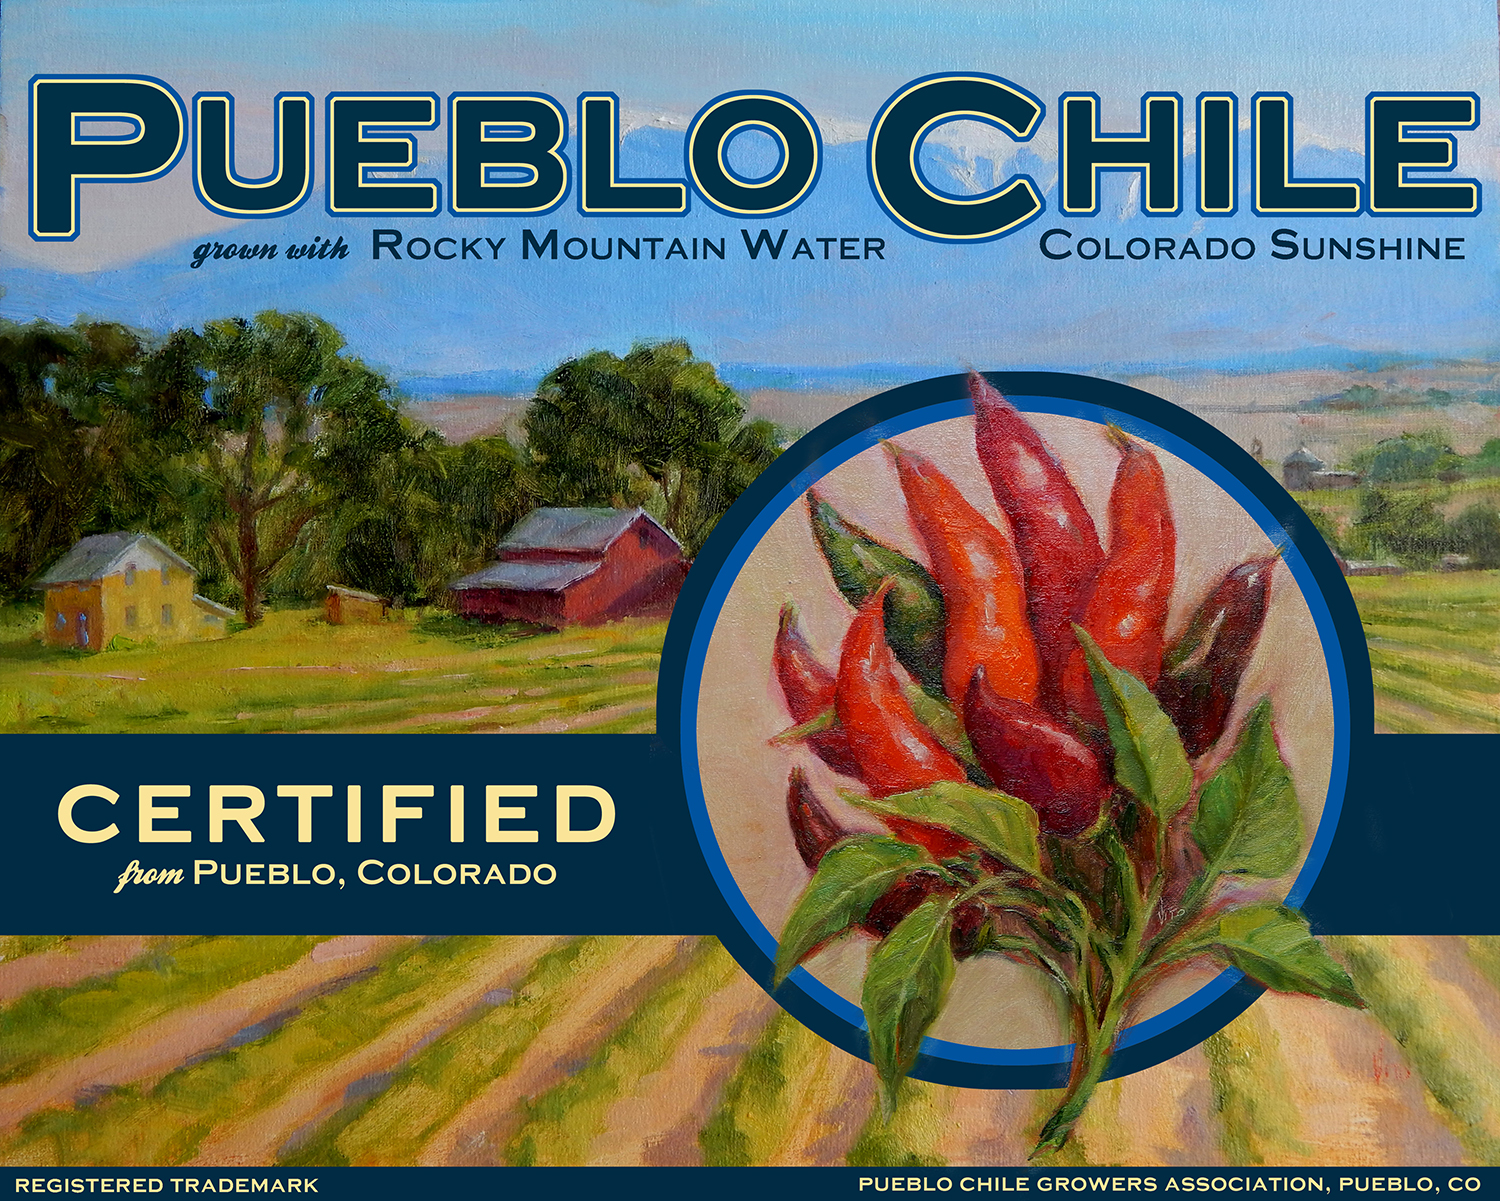 Pueblo Chile Growers Association trademark logo, Pueblo, Colorado.